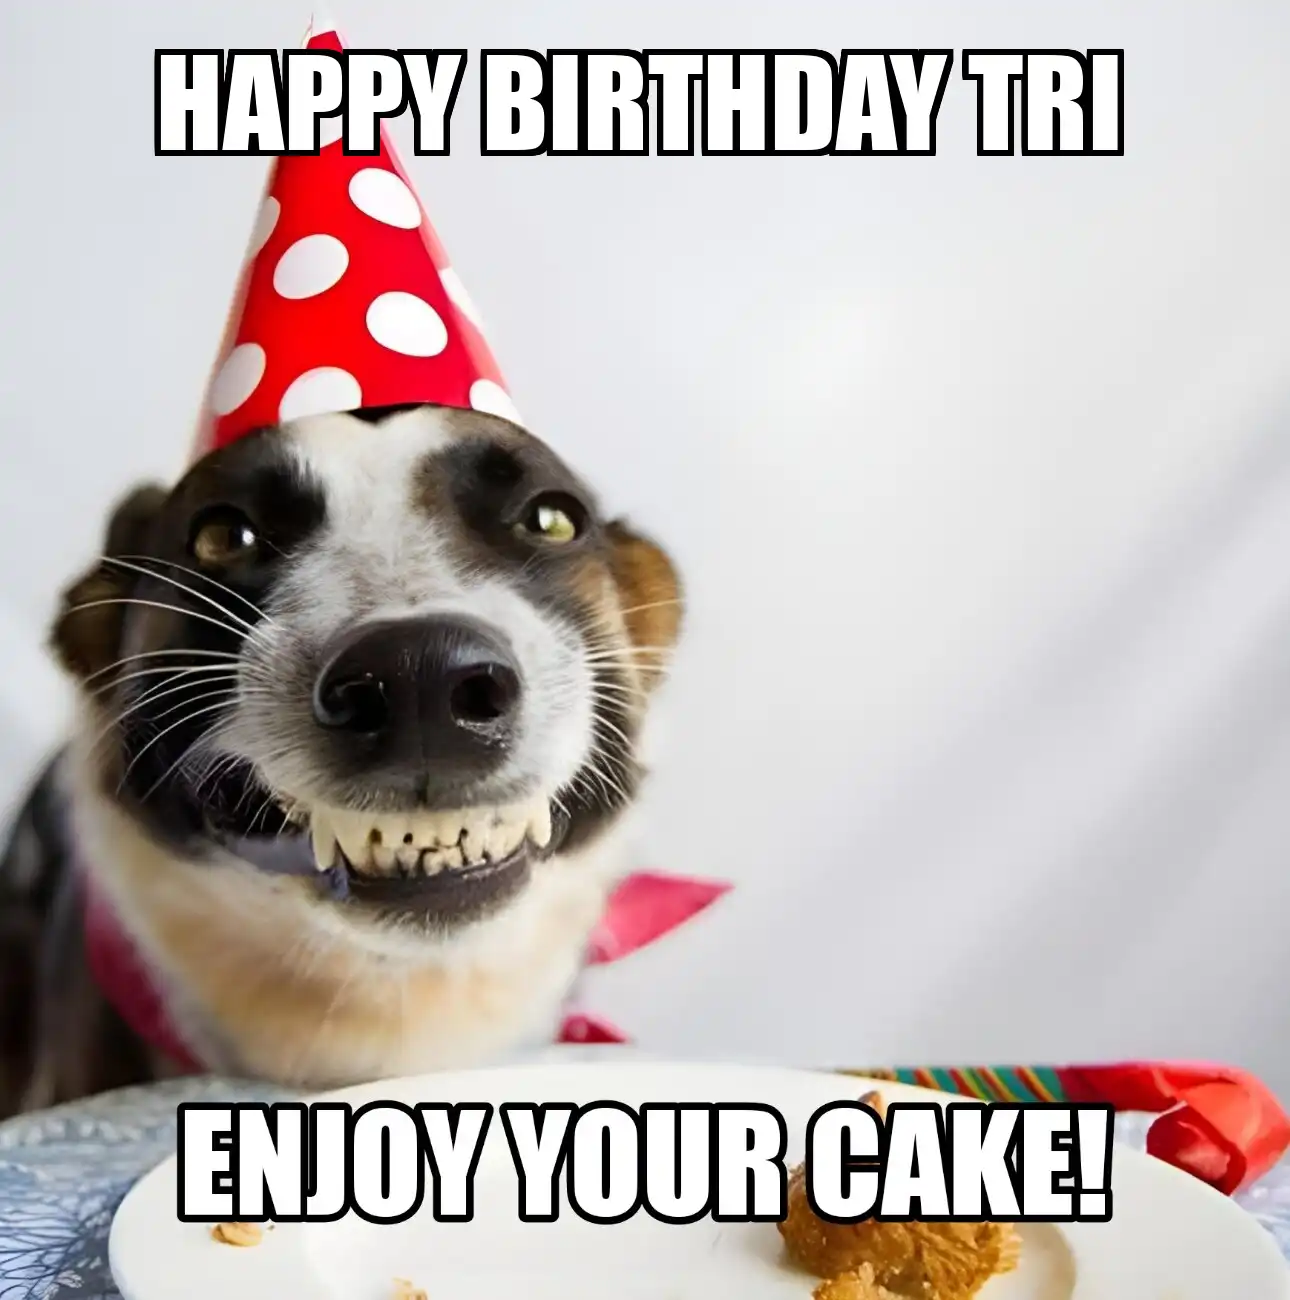 Happy Birthday Tri Enjoy Your Cake Dog Meme